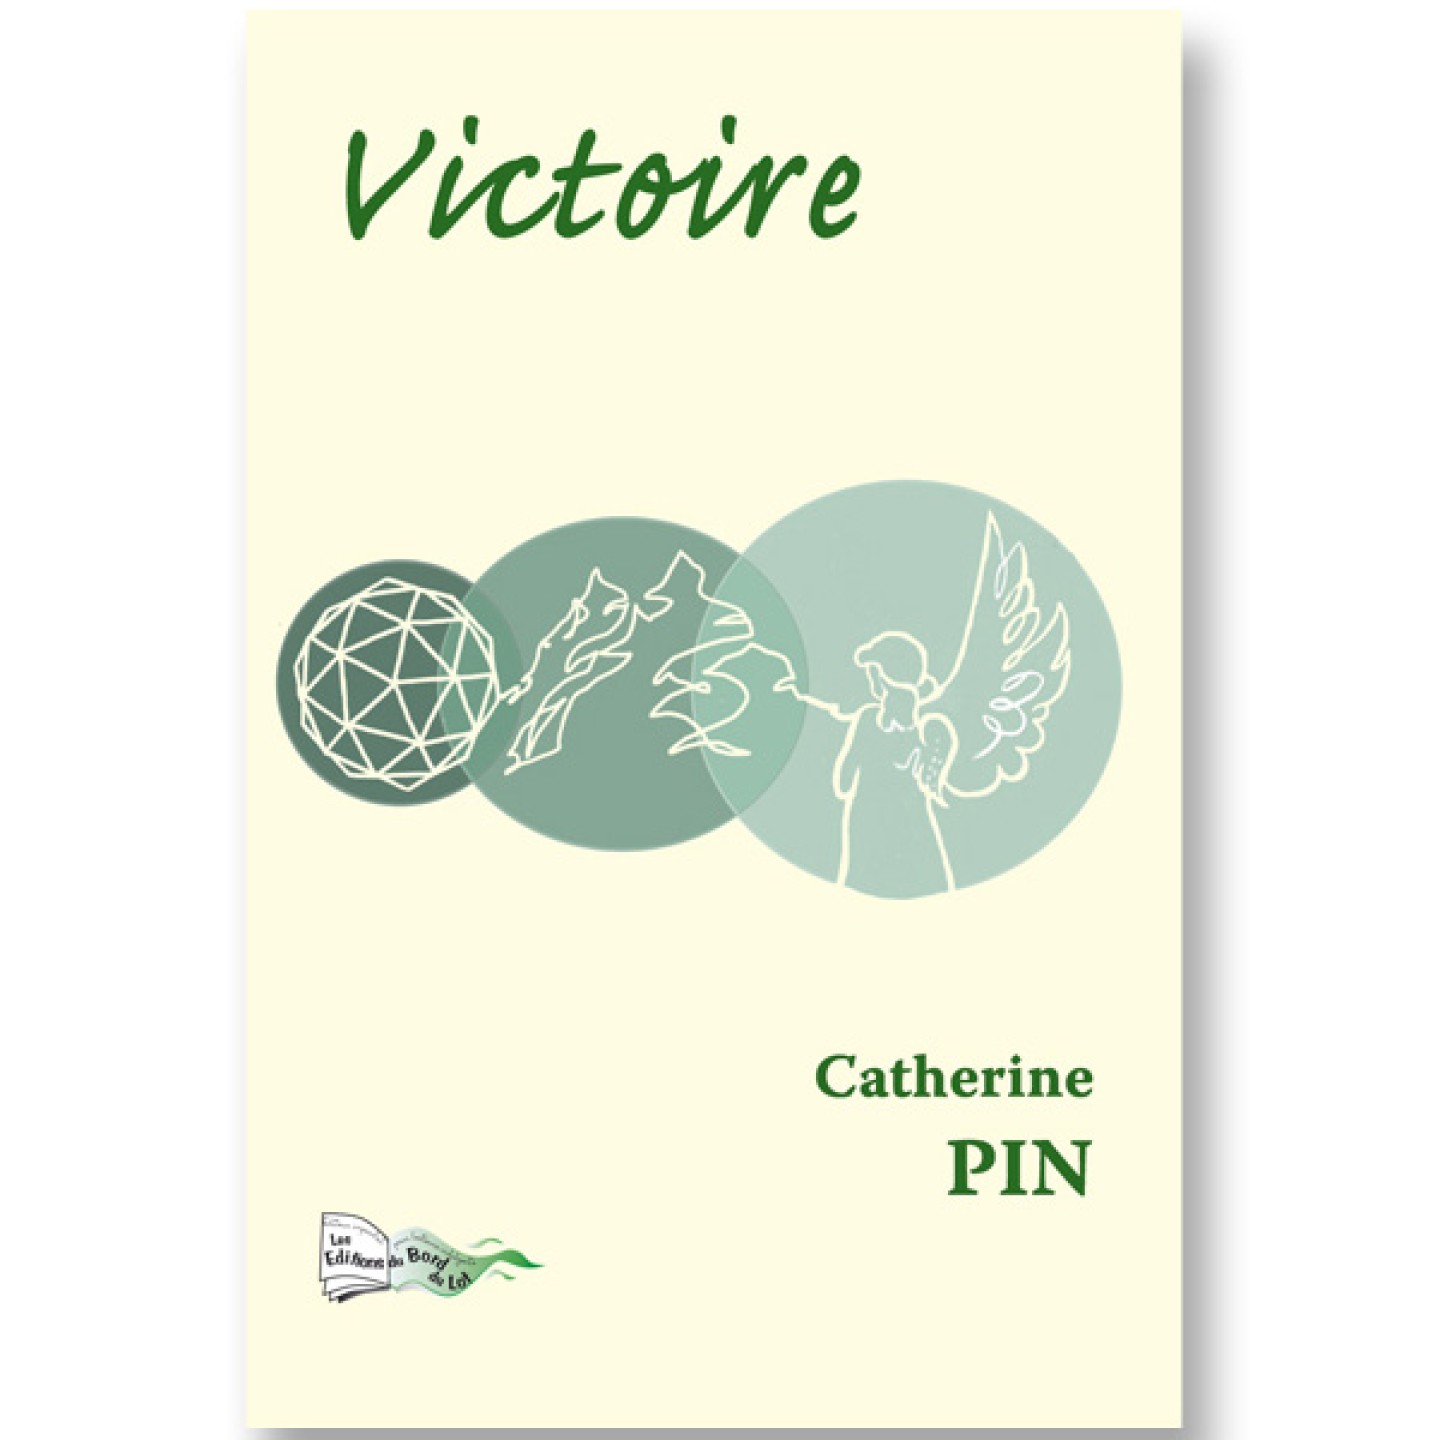 Victoire de Catherine Pin